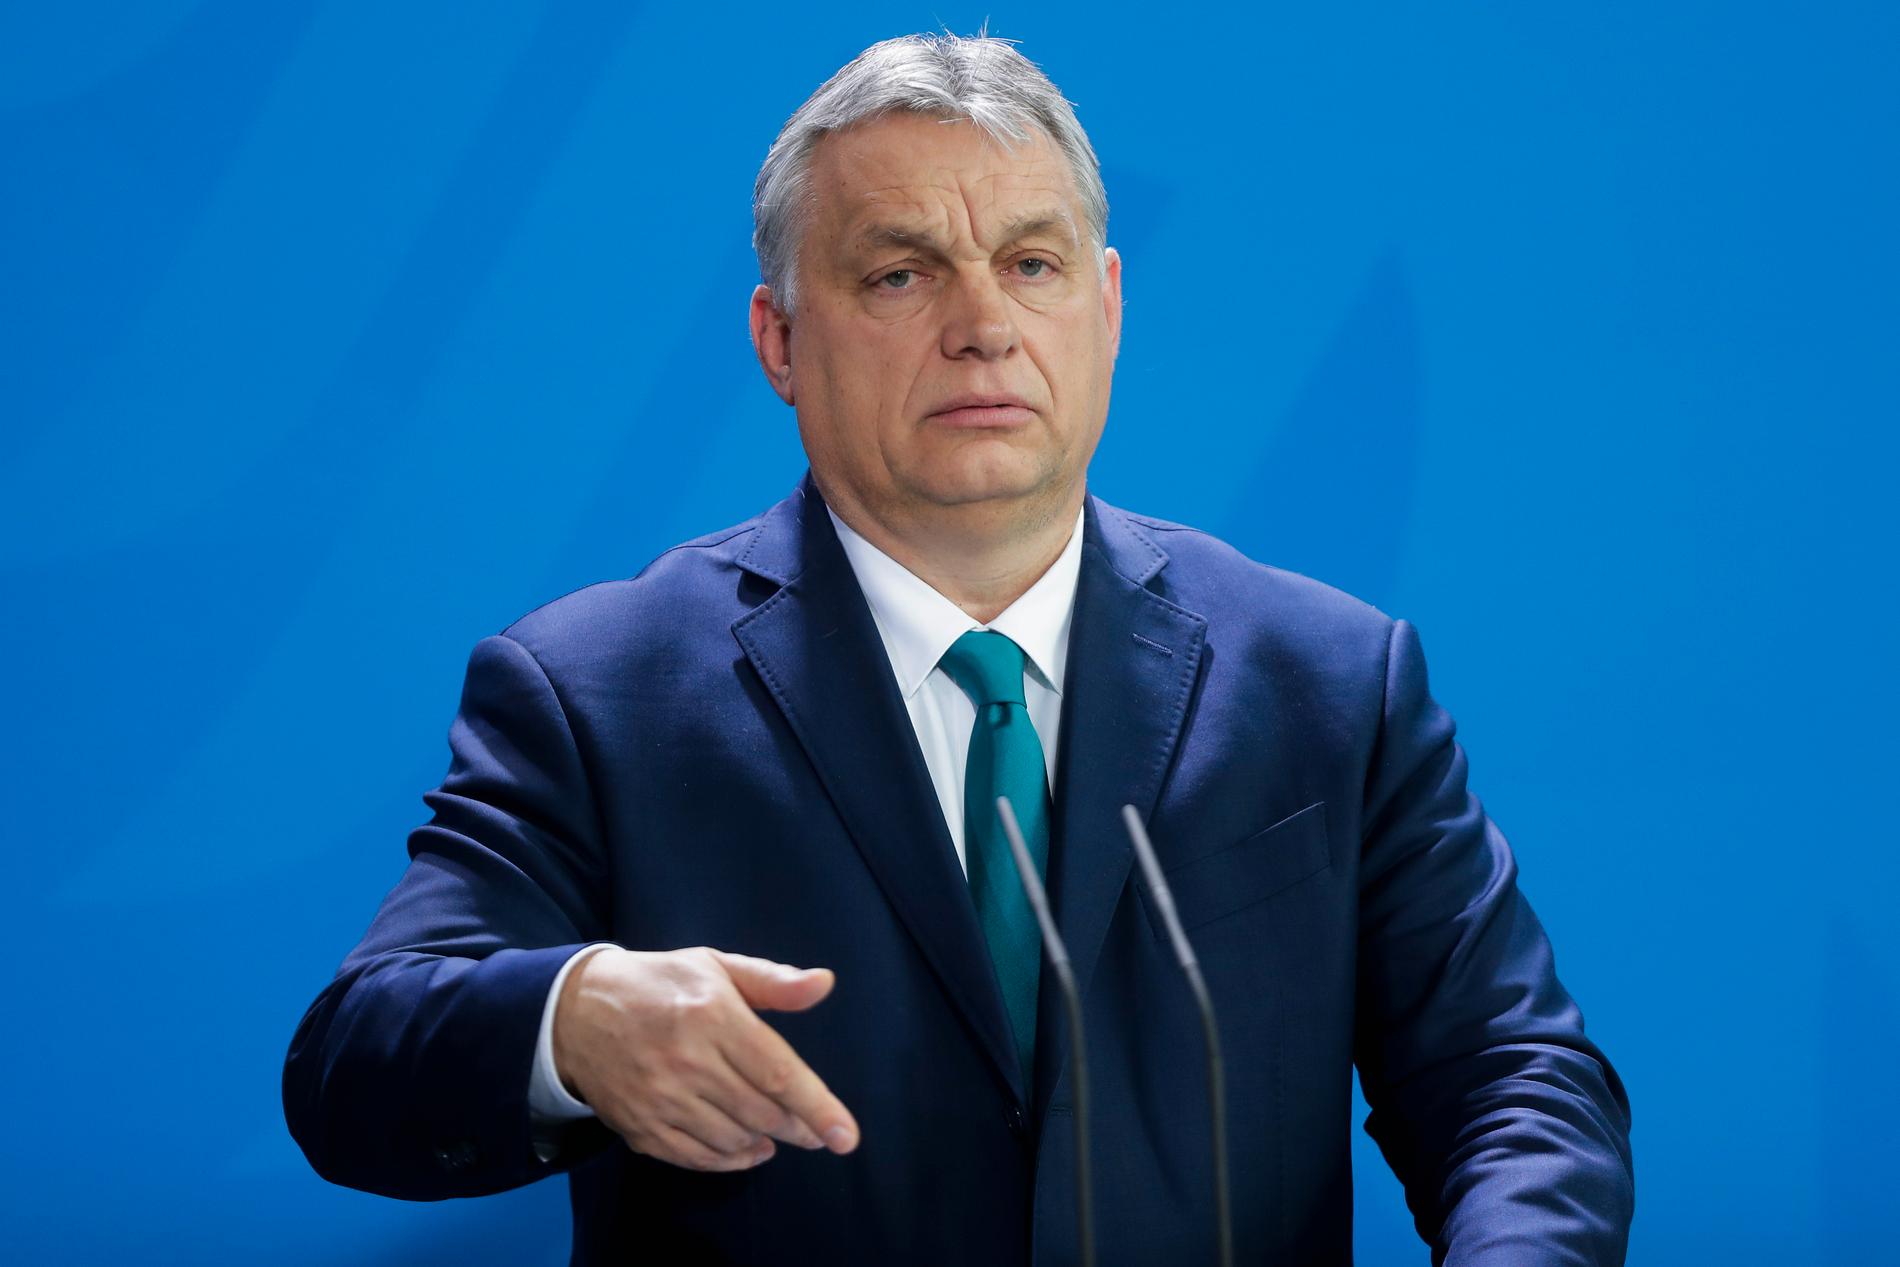 Ungerns premiärminister Viktor Orbán har tidigare väckt uppmärksamhet med uttalanden som ”Vi ungrare är inte en blandras och vi vill inte bli en blandras”.